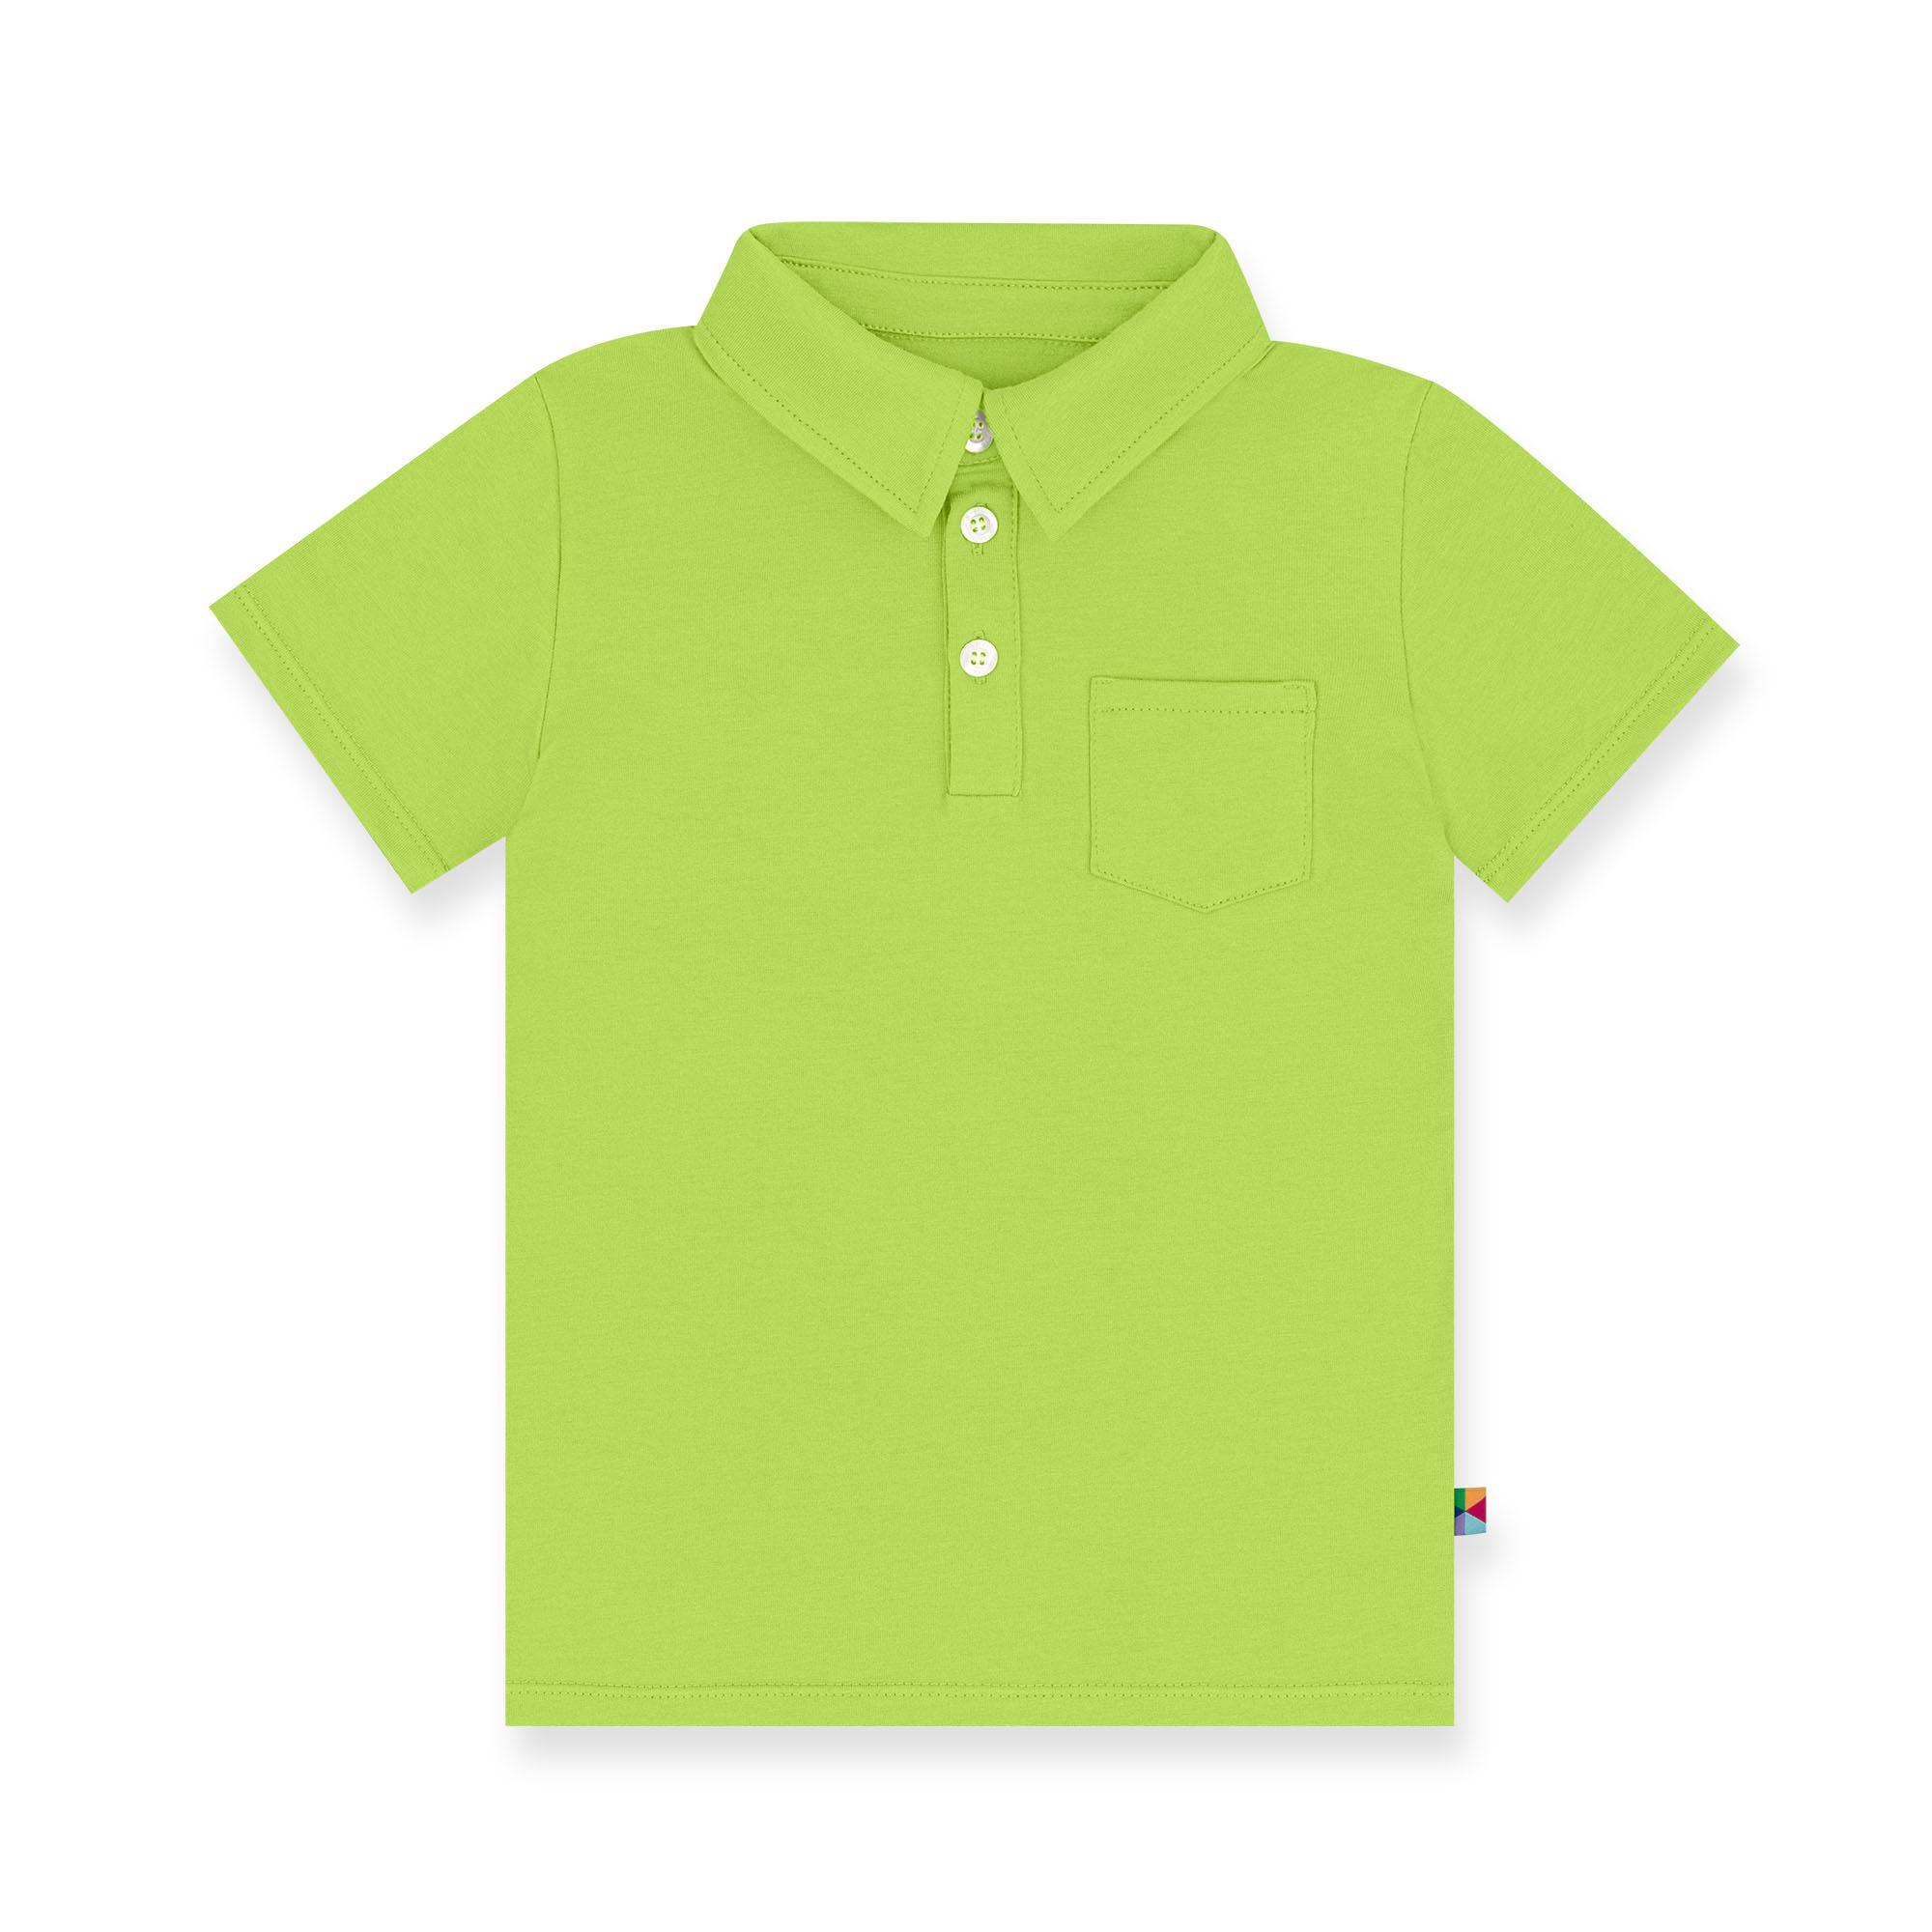 Limonkowa koszulka Polo